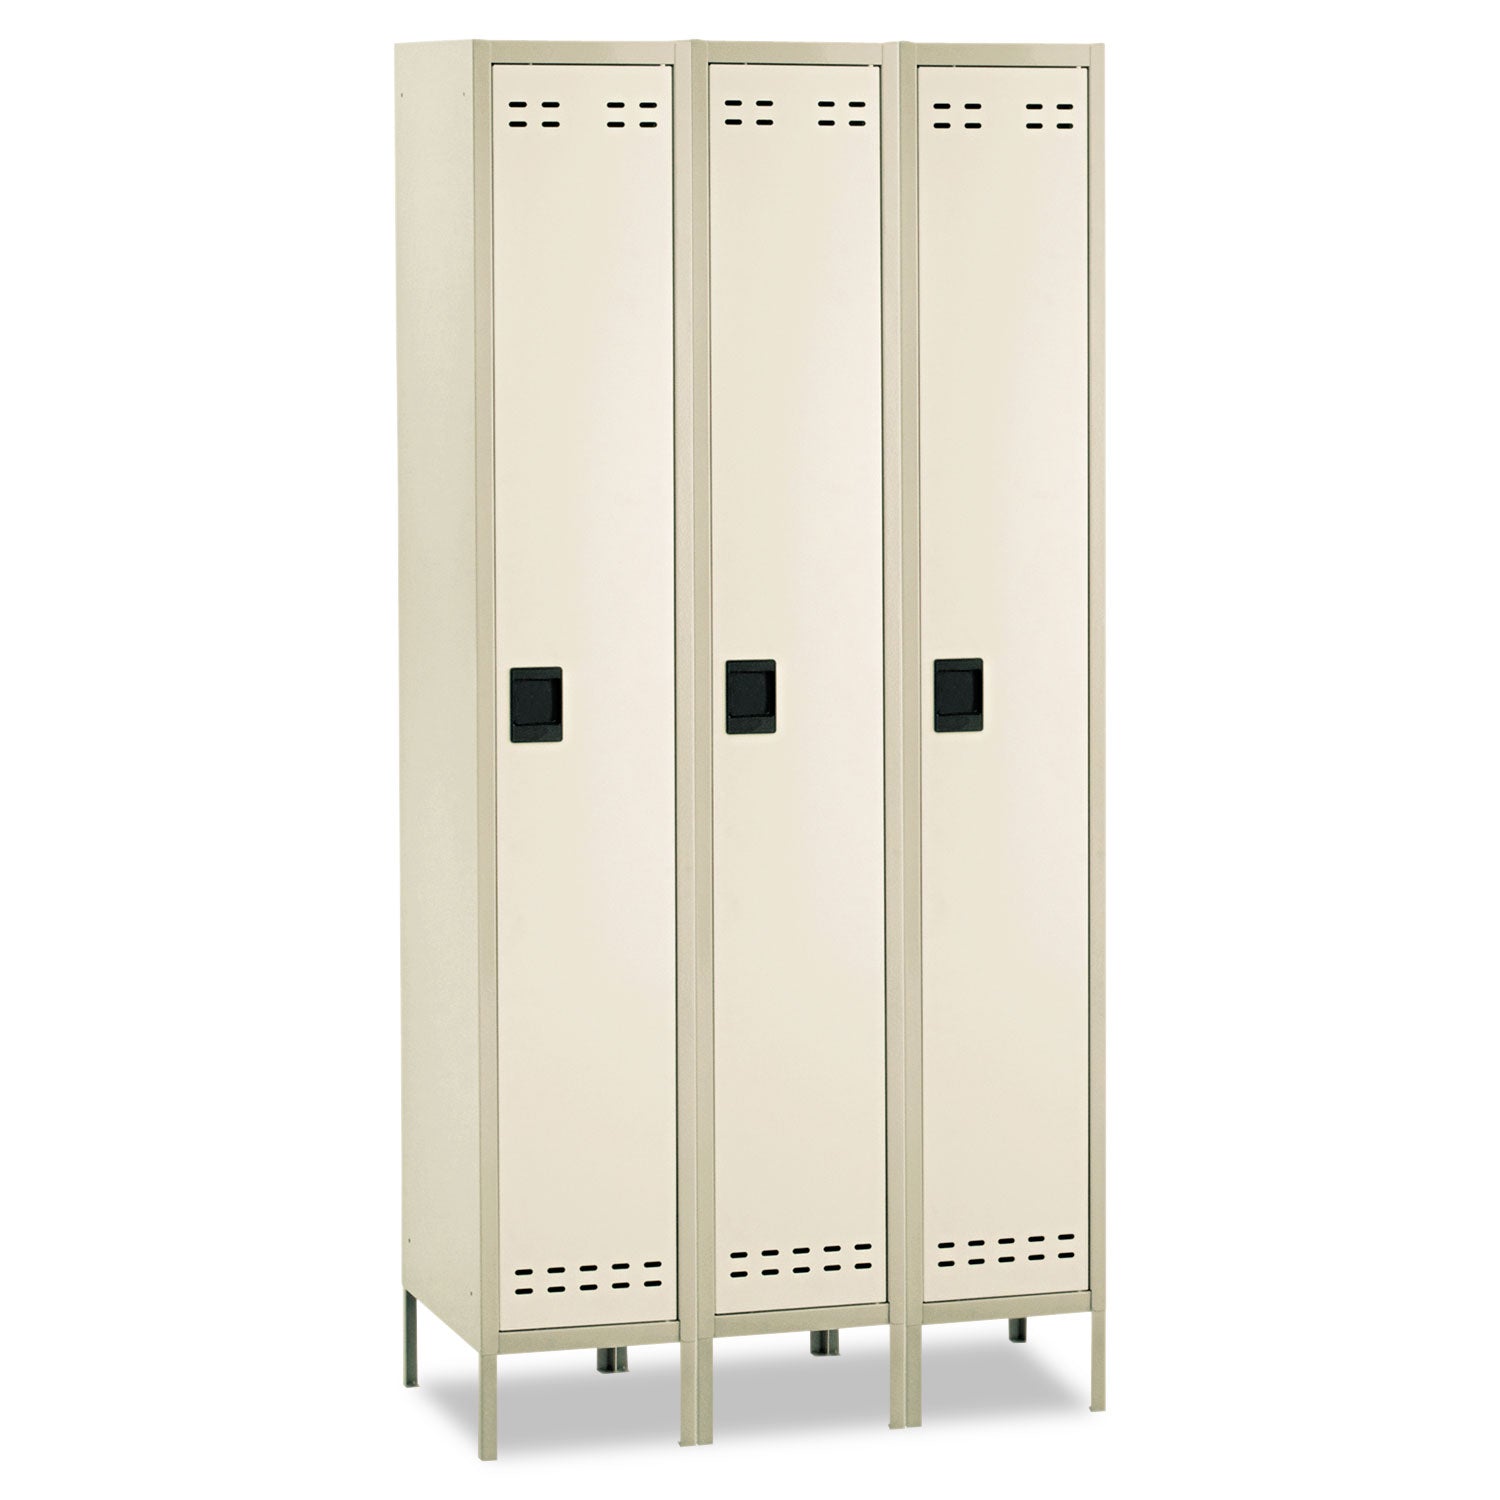 Single-Tier, Three-Column Locker, 36w x 18d x 78h, Two-Tone Tan - 